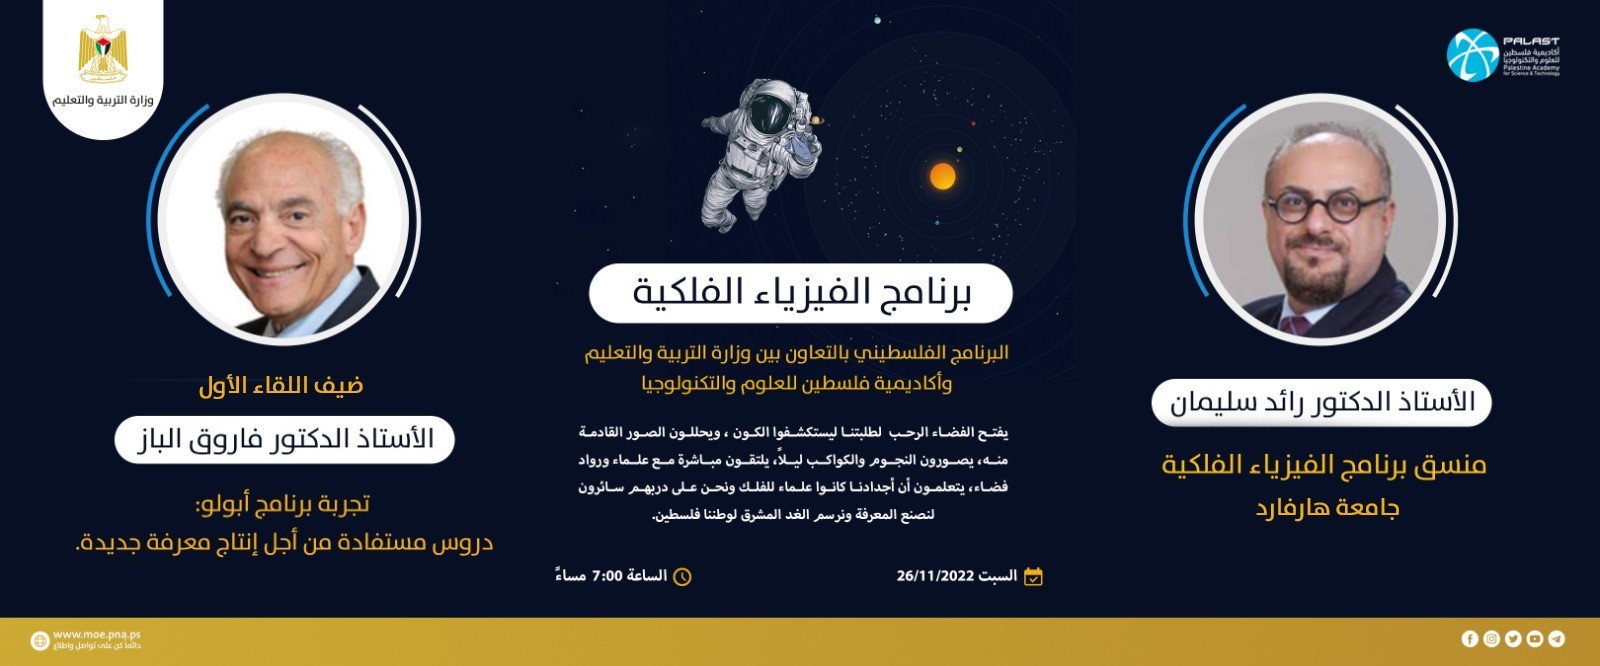 التعليم تطلق اليوم برنامج فلسطين للفيزياء الفلكية